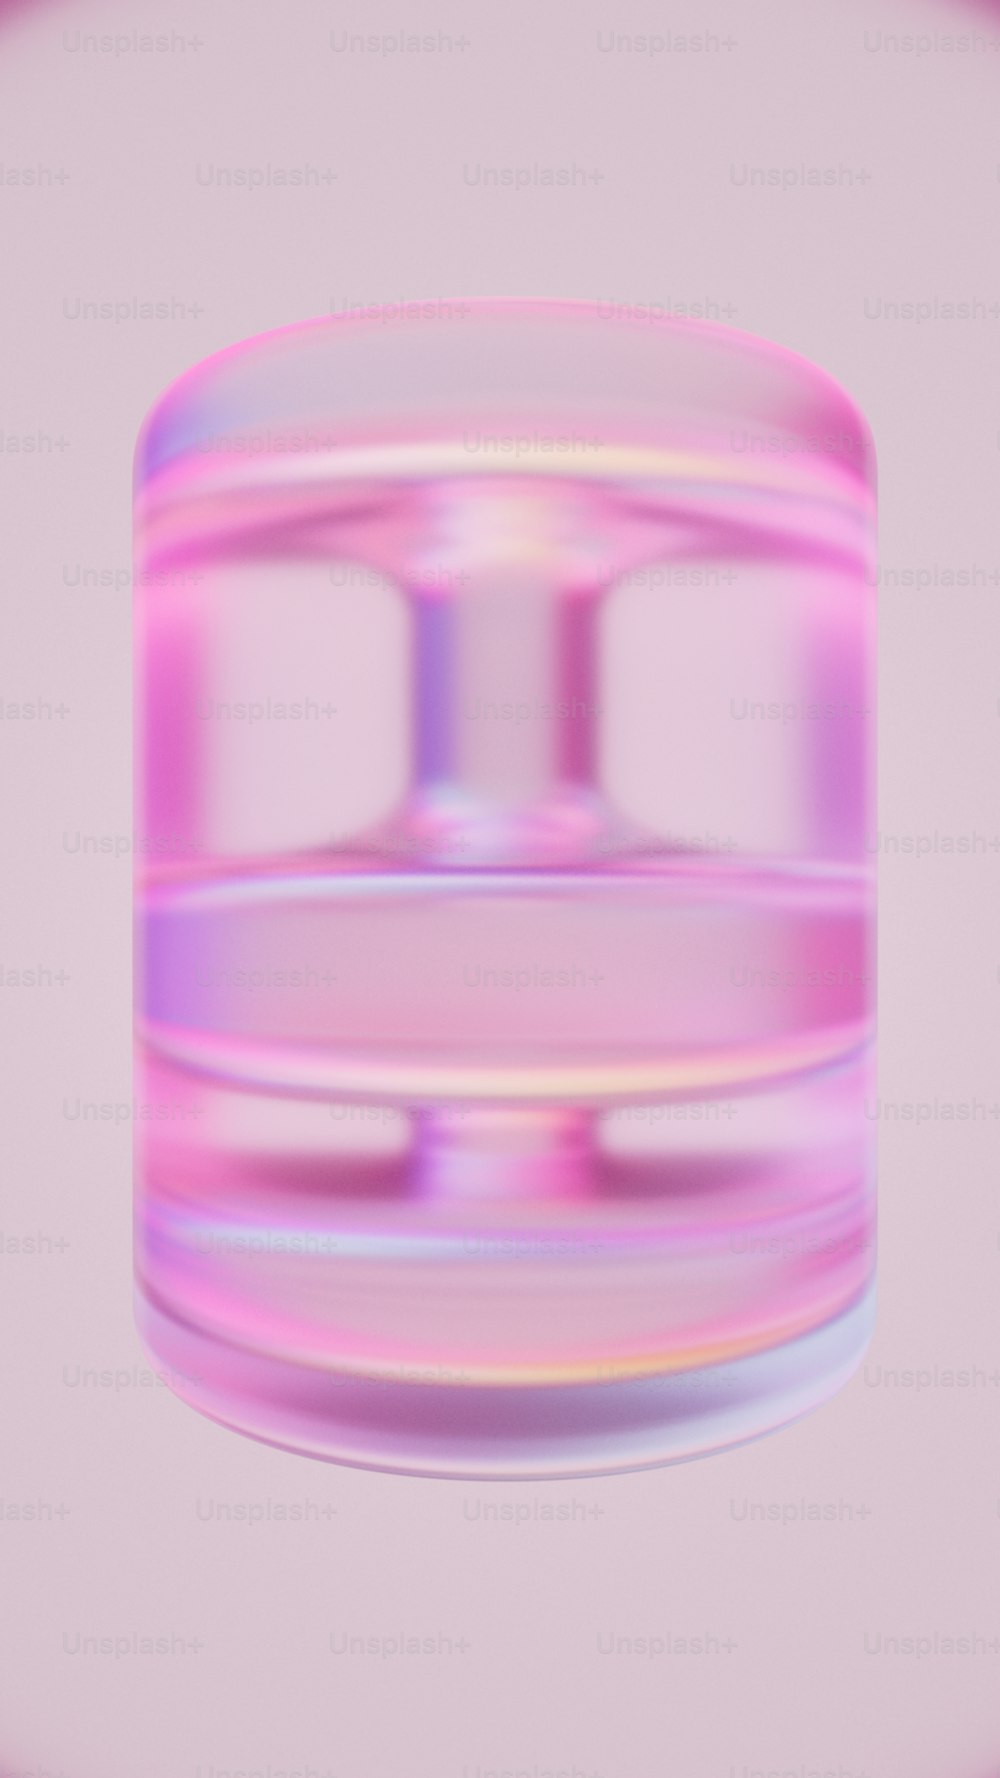 Un recipiente de plástico rosa